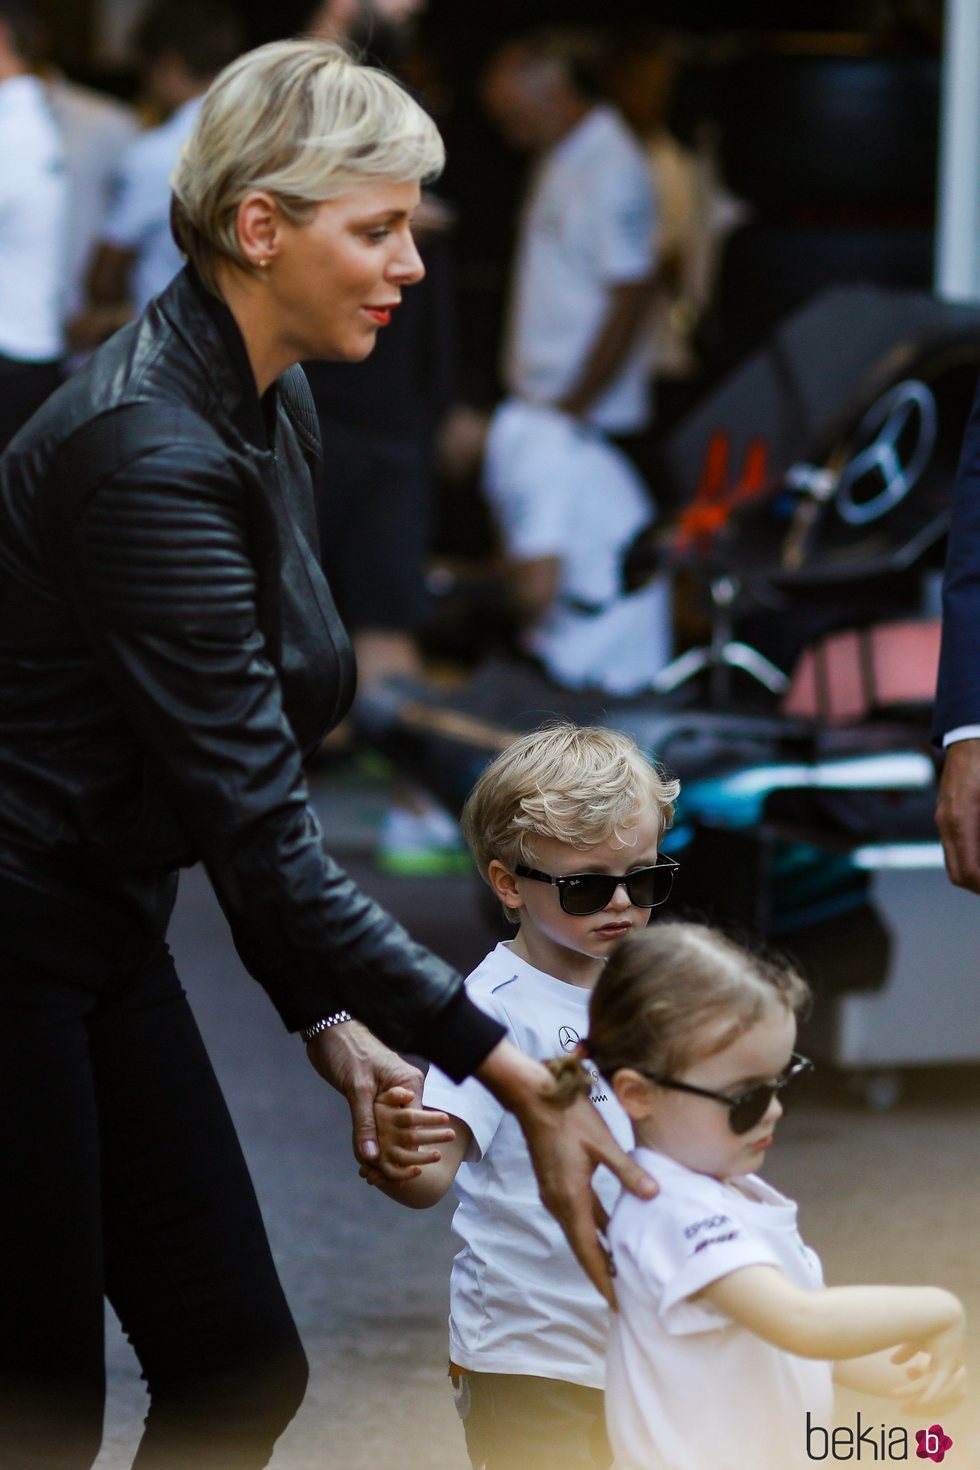 Charlene de Mónaco con sus hijos Jacques y Gabriella en el Gran Premio de Mónaco